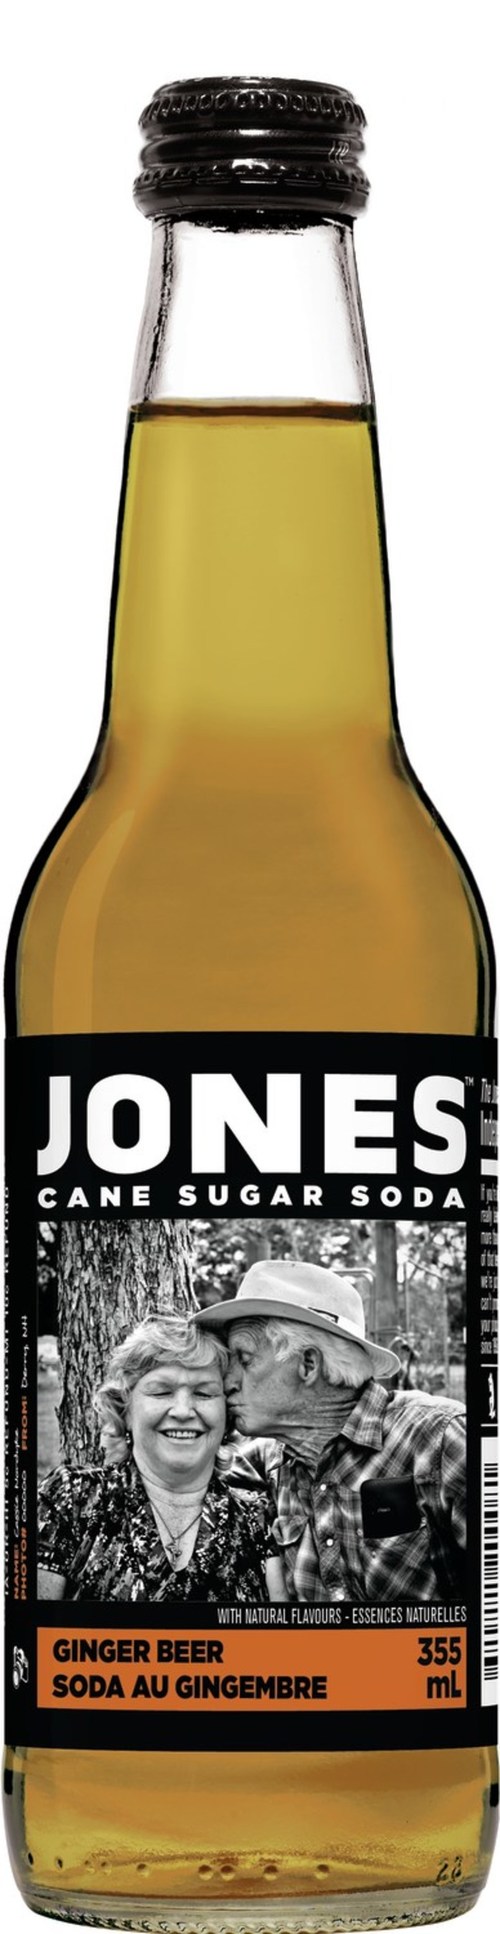 Jones Soda Ginger Beer (CNW Group/Jones Soda Co.)